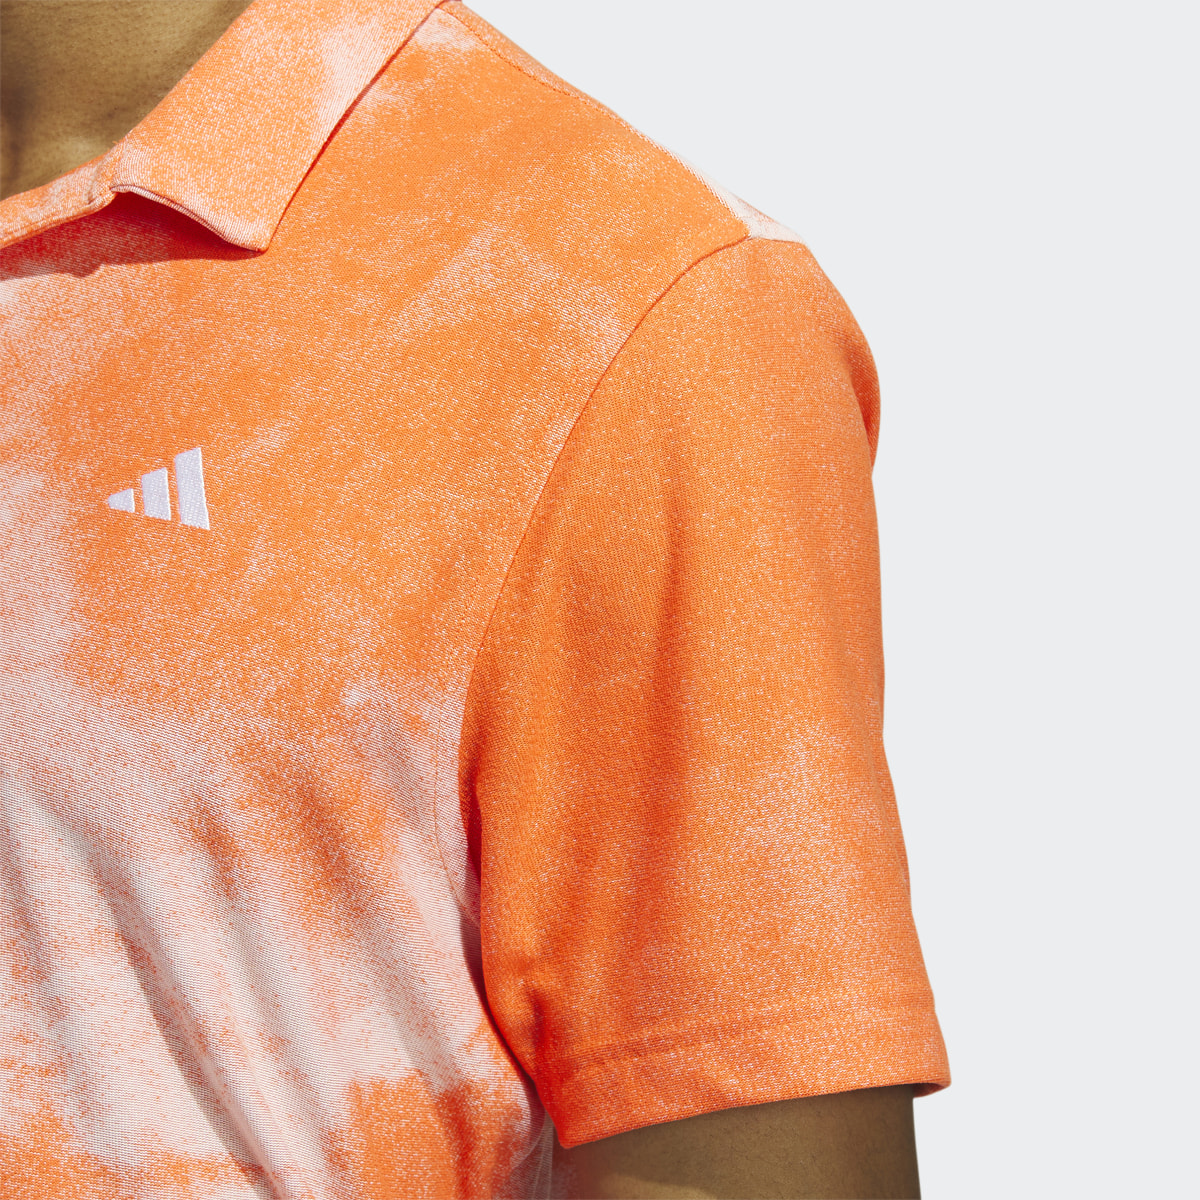 Adidas Made To Be Remade No-Button Jacquard Golf Shirt. 6